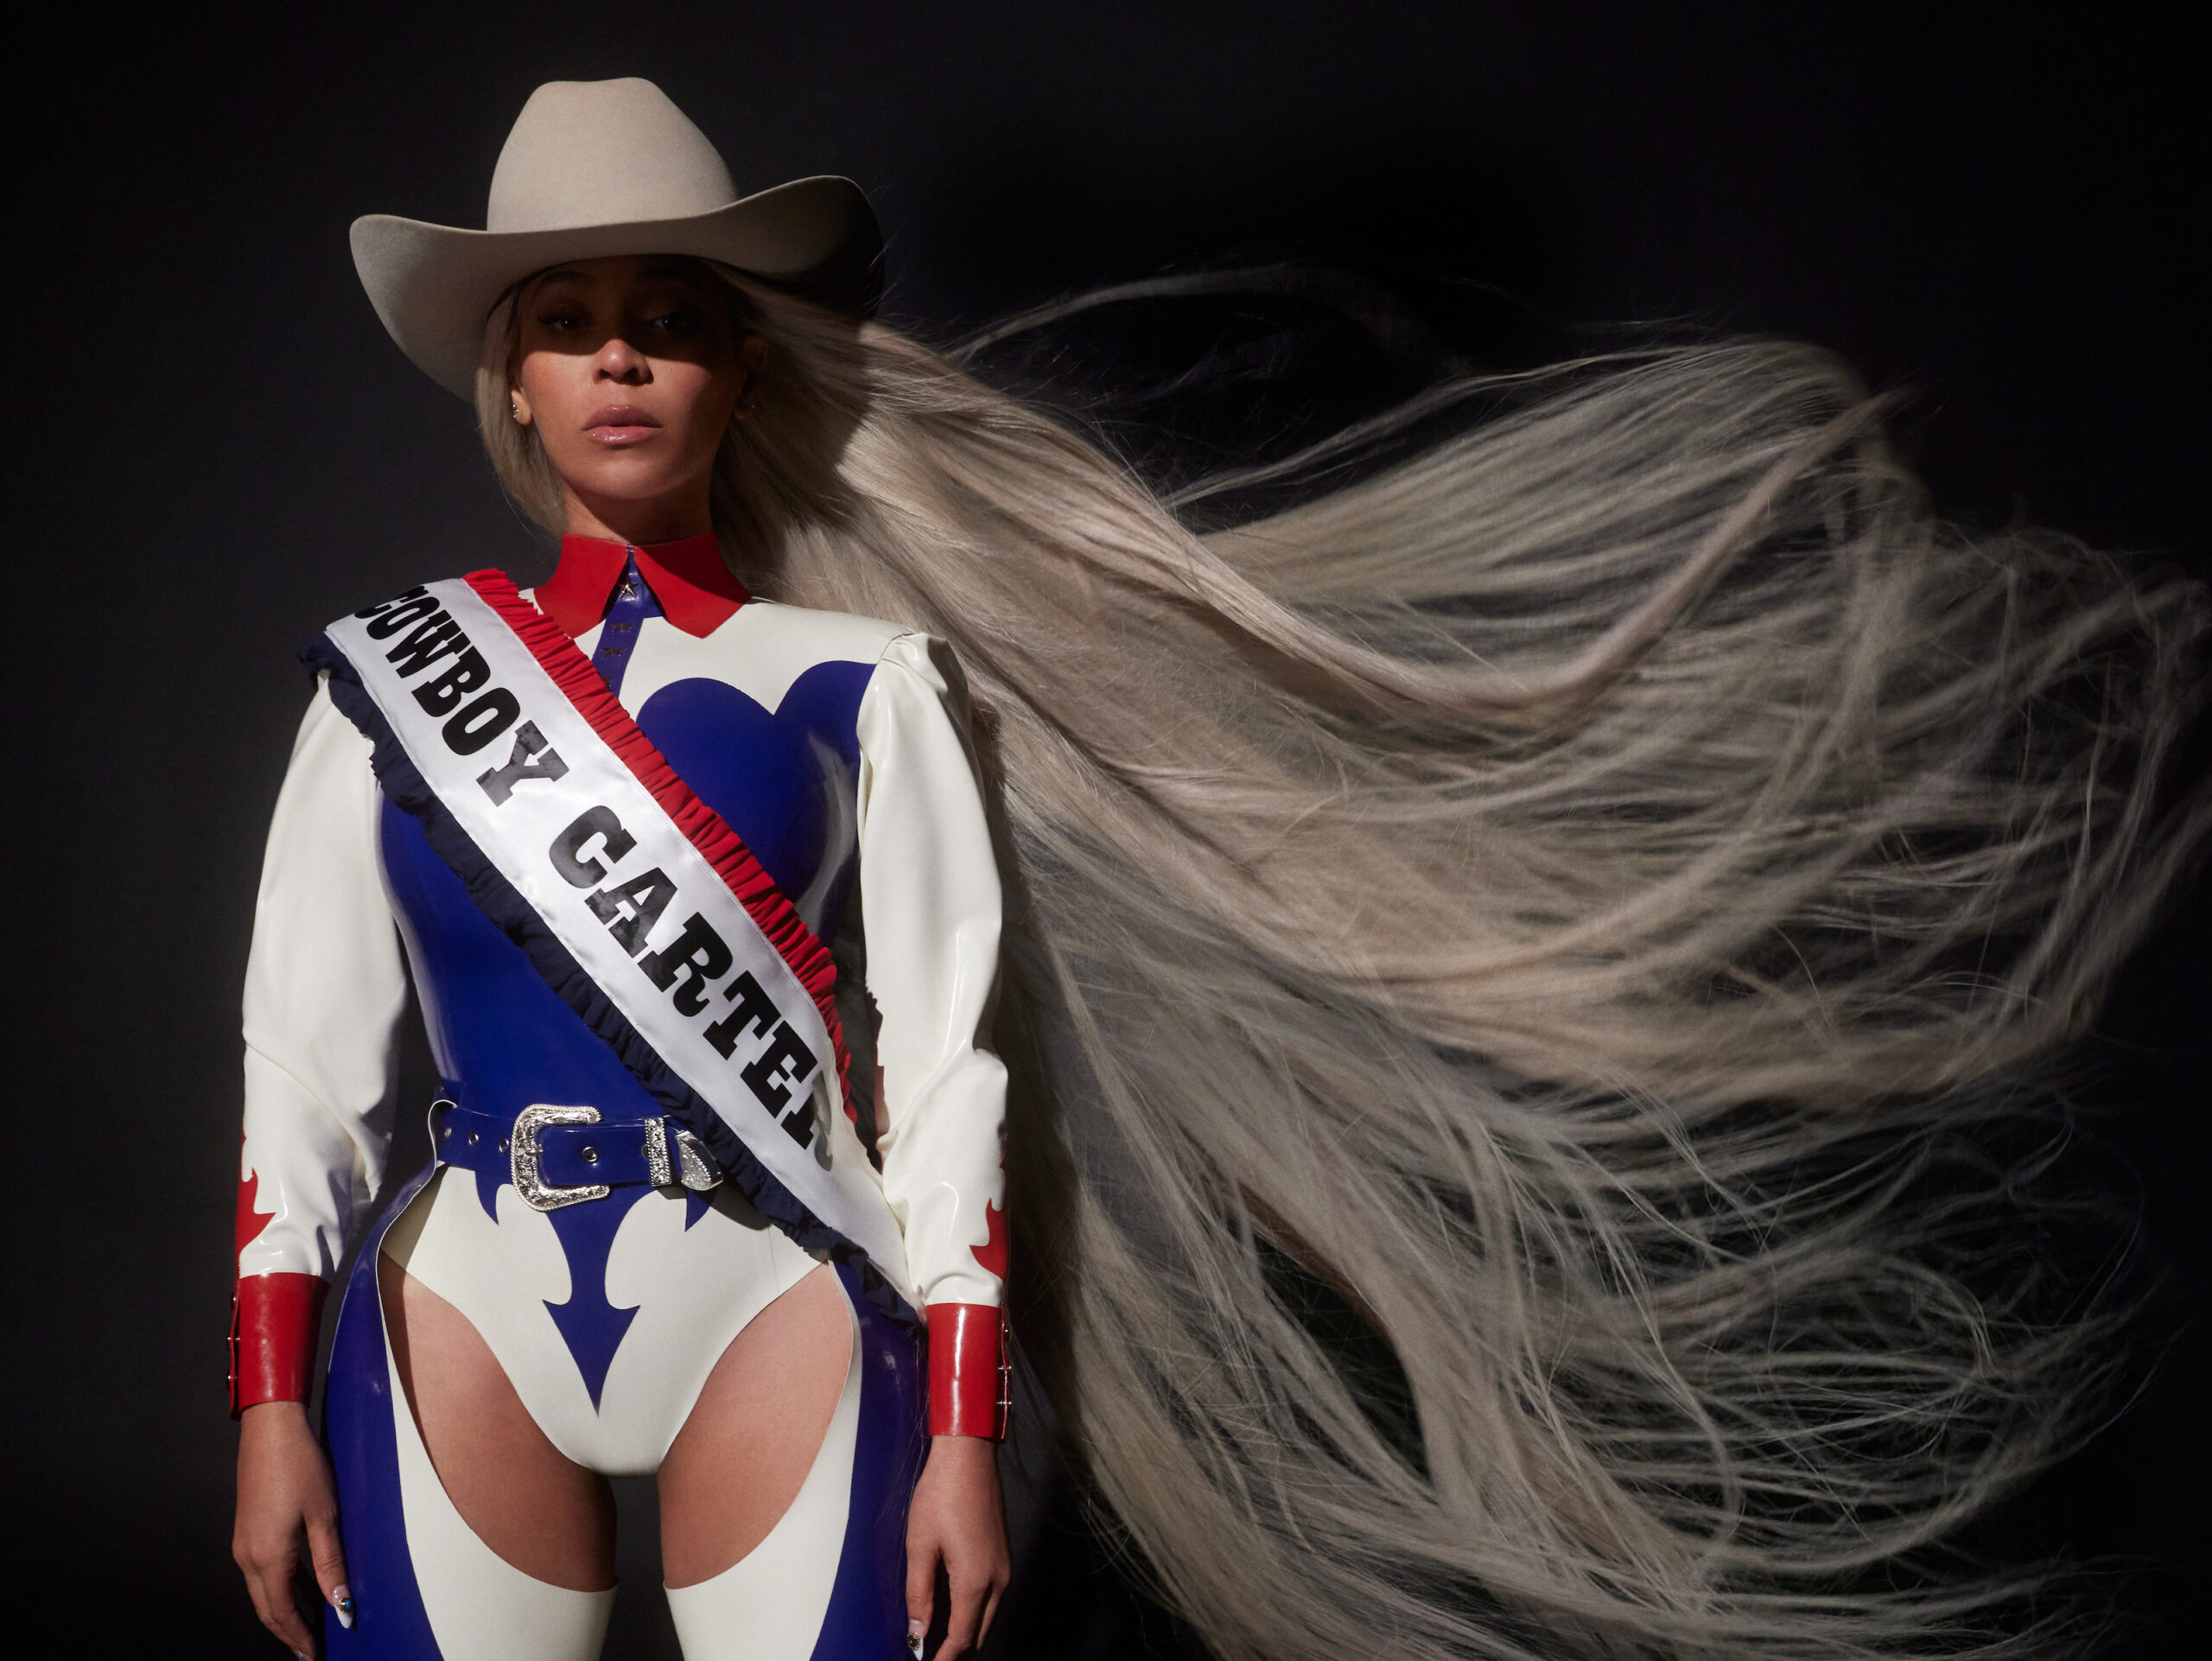 10 takeaways from Beyoncé’s new album, ‘Cowboy Carter’